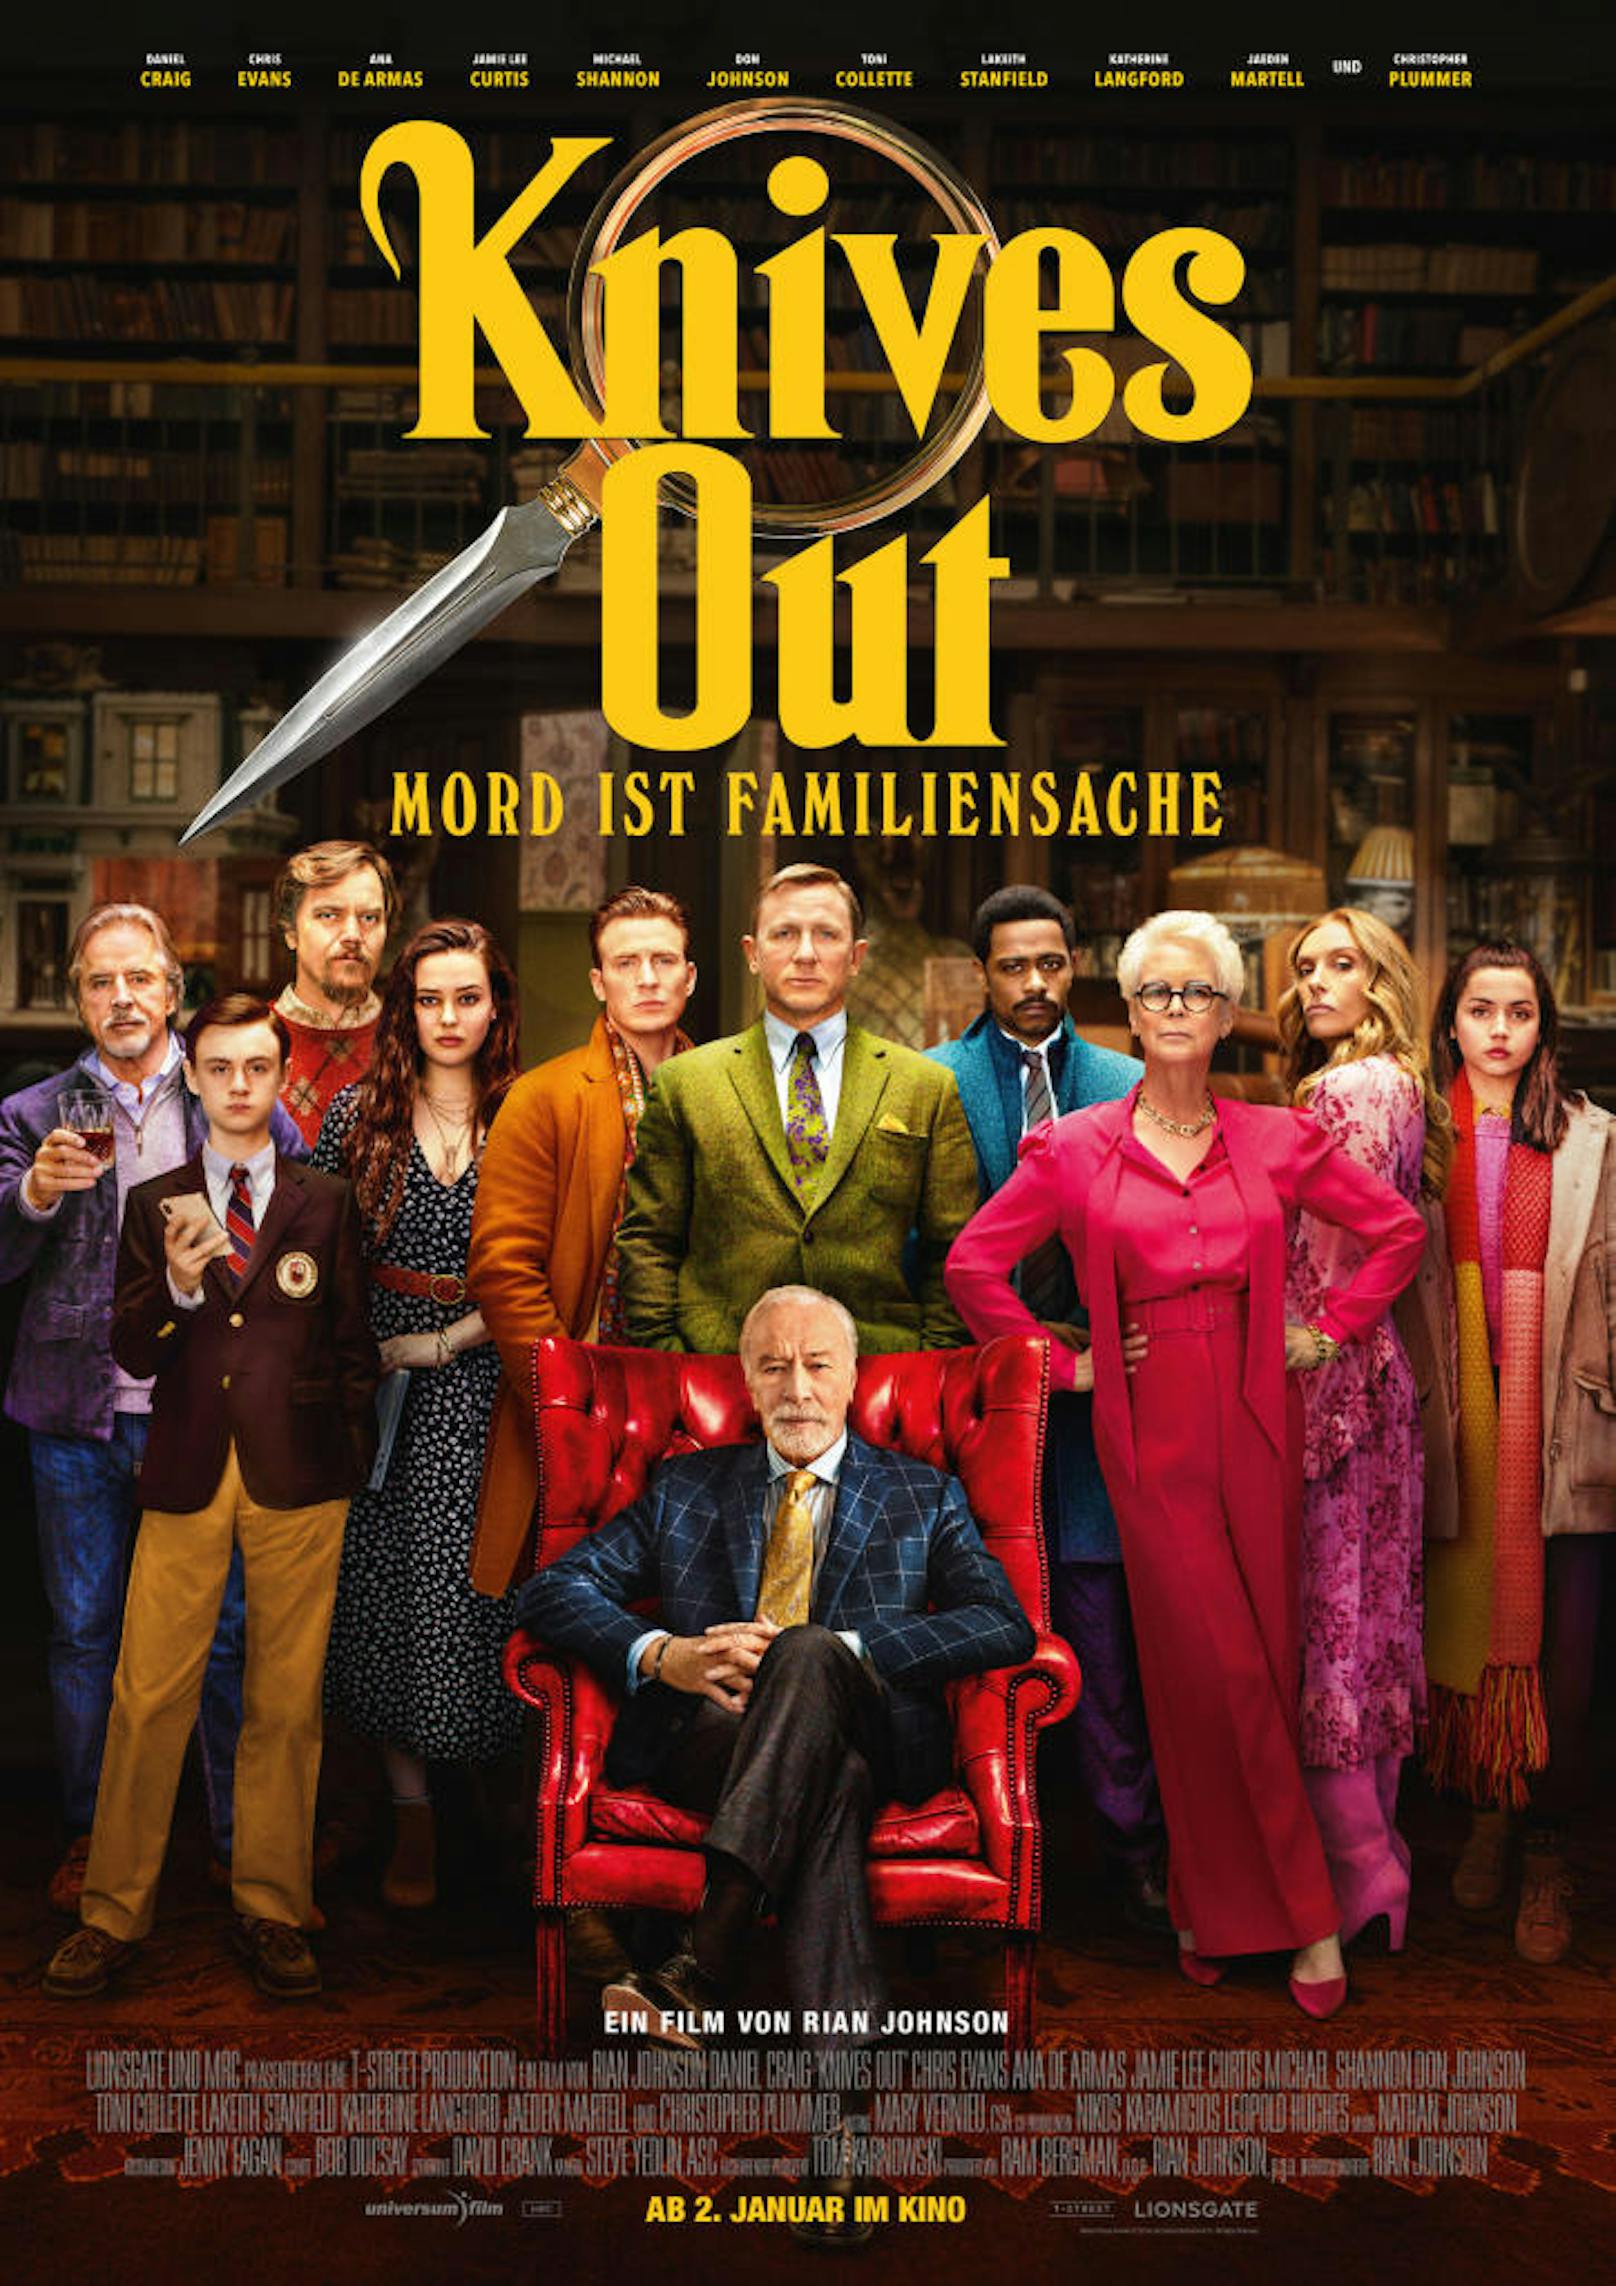 "Knives Out": Würde Agatha Christie heute schreiben, wäre sie neidisch...
Ab 2.1.2019 im Kino!